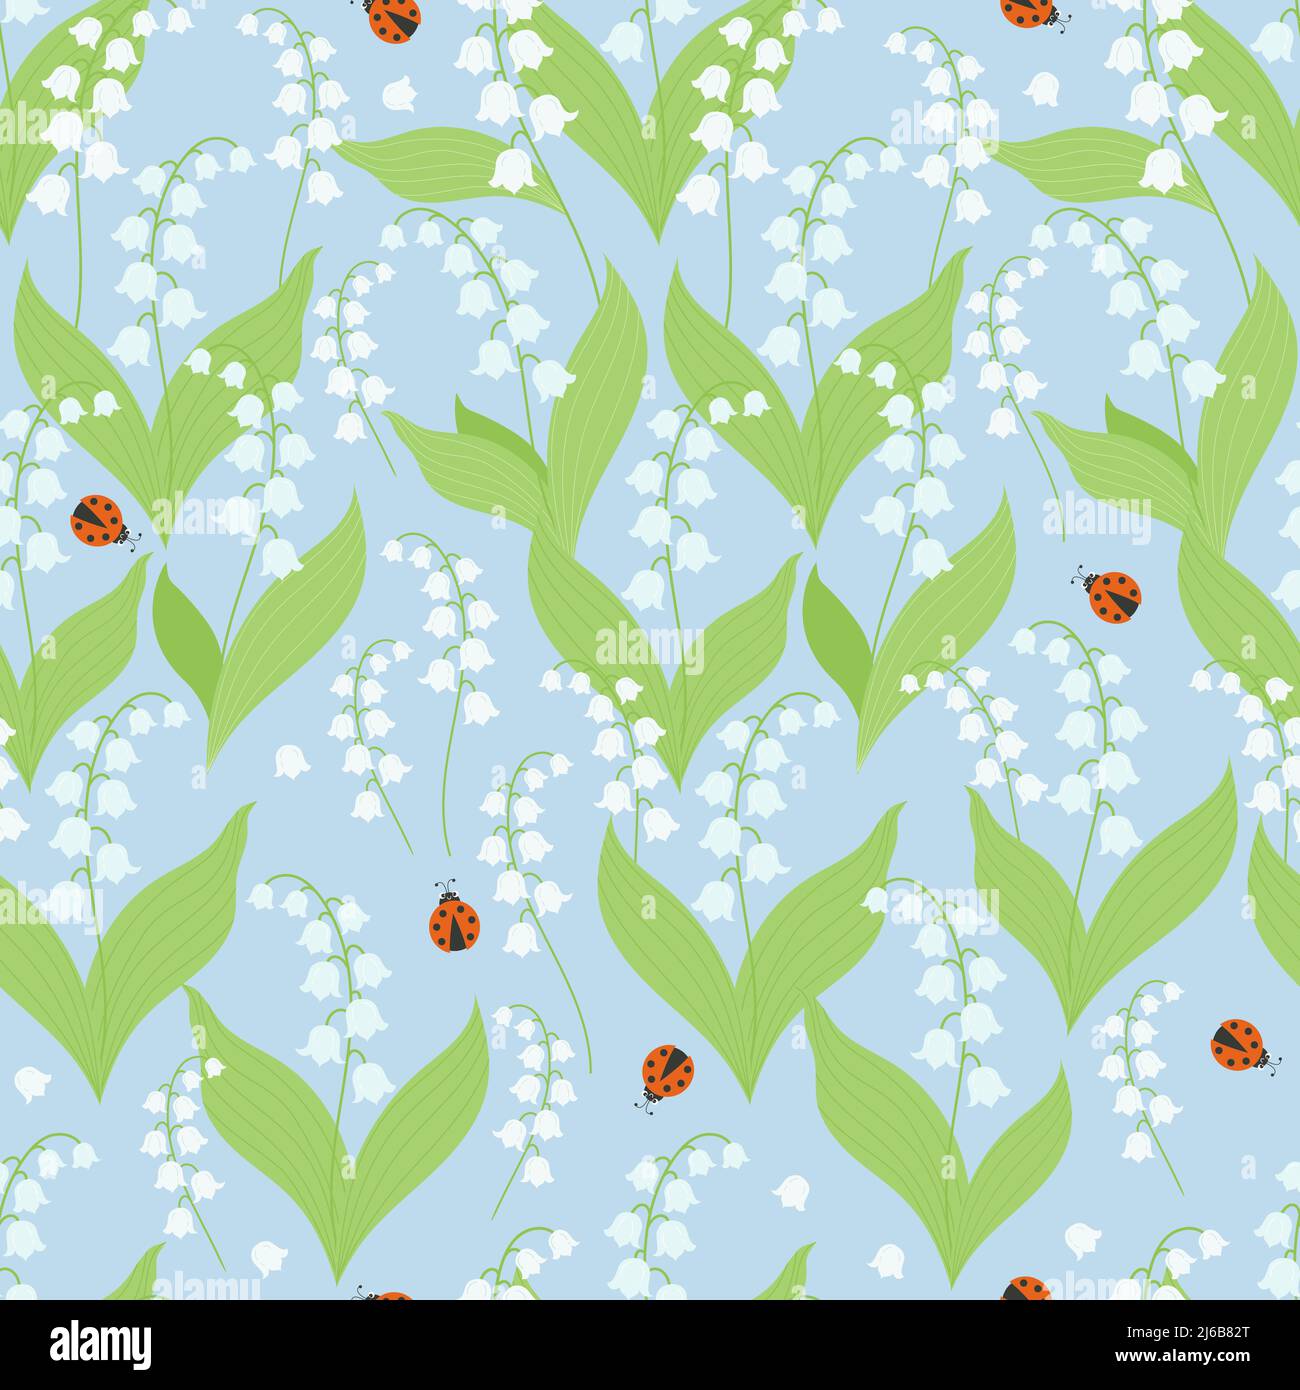 Carino motivo floreale senza cuciture con gigli di maggio della valle e ladybugs su sfondo azzurro chiaro. Illustrazione vettoriale. Schema a molla con flusso forestale Illustrazione Vettoriale